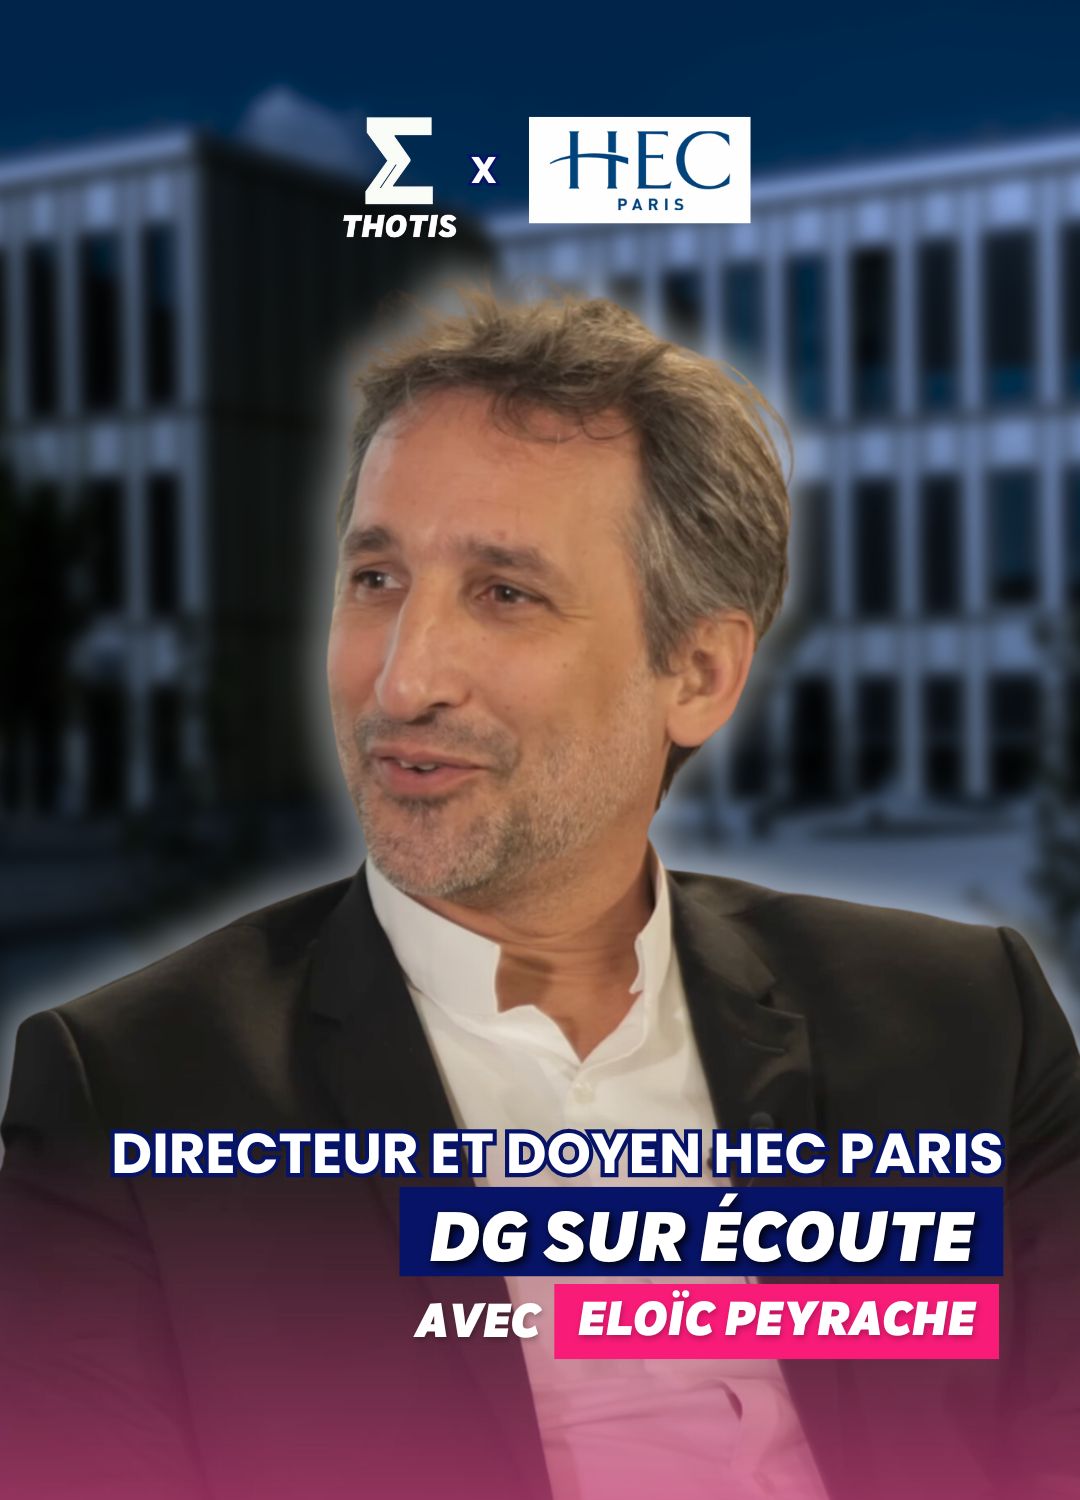 DG sur écoute avec Eloïc Peyrache HEC Paris